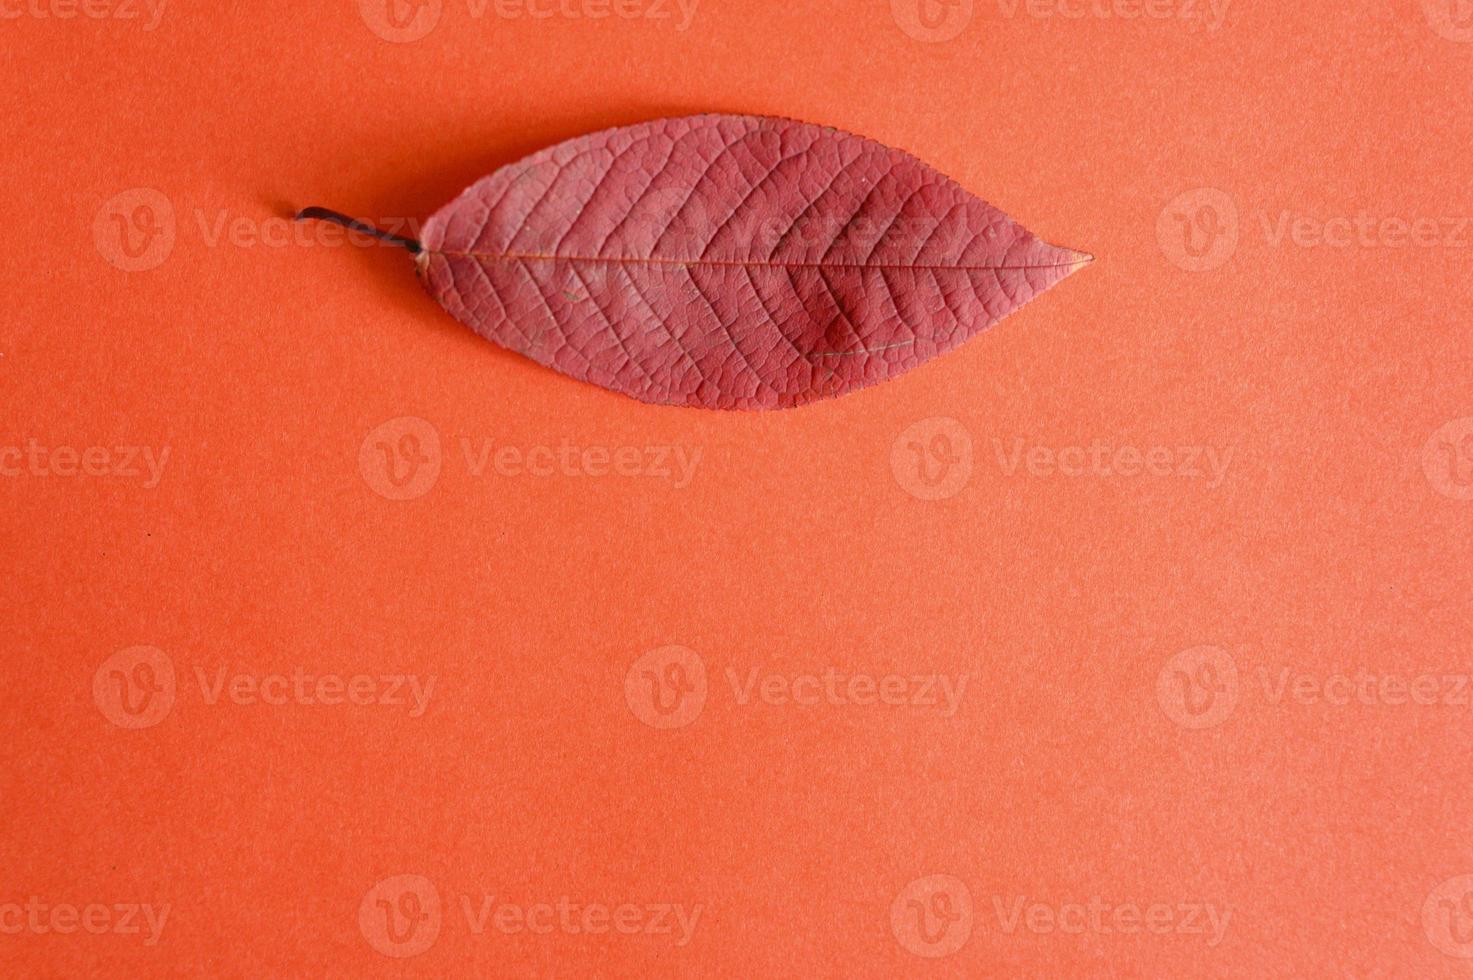 foglia di ciliegio autunno rosso caduta su uno sfondo di carta rossa foto